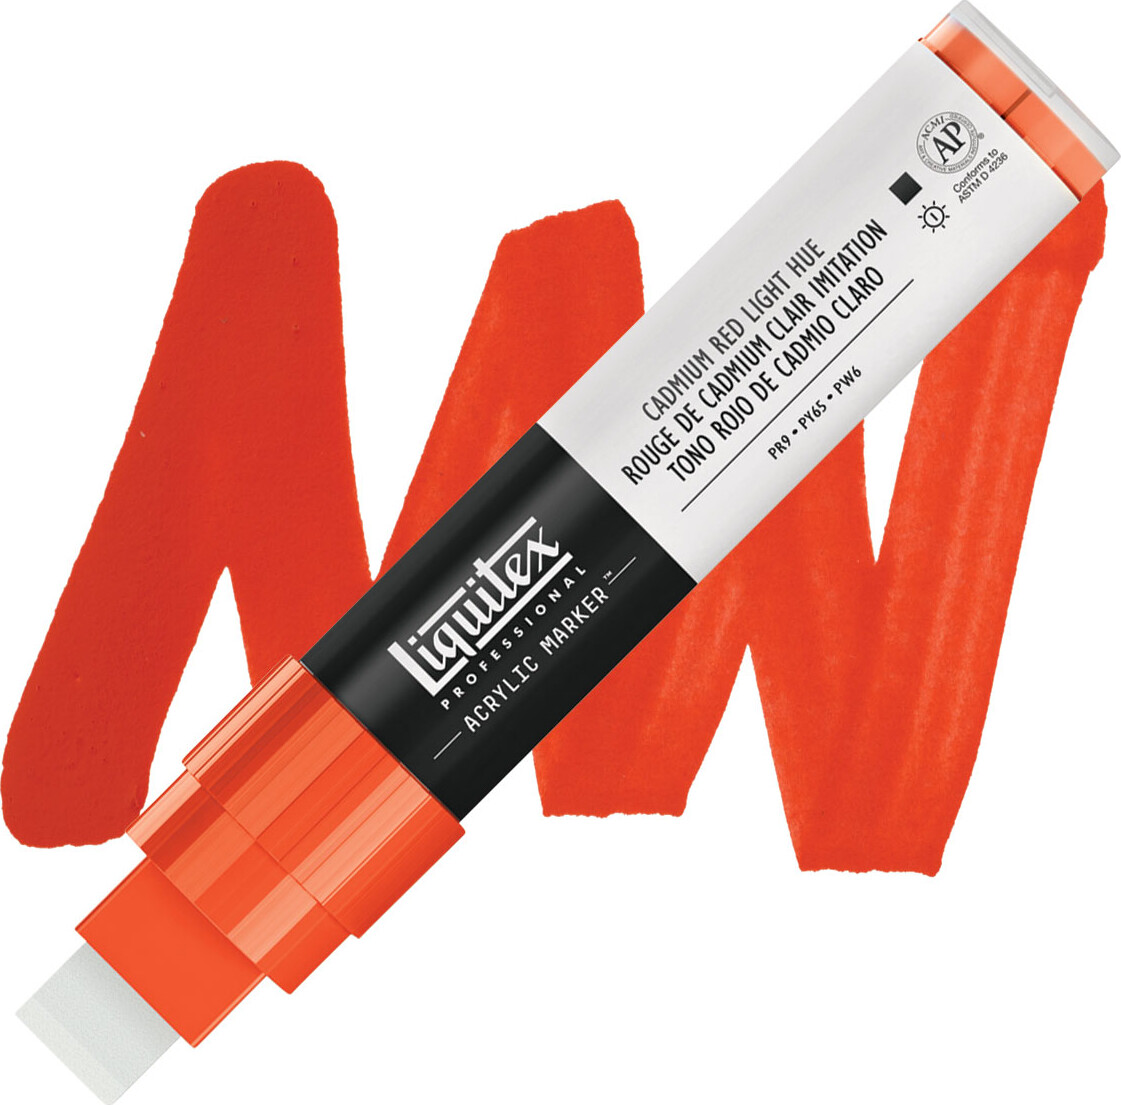 Liquitex - Paint Marker Wide Tusch - Cadmium Red Light Hue